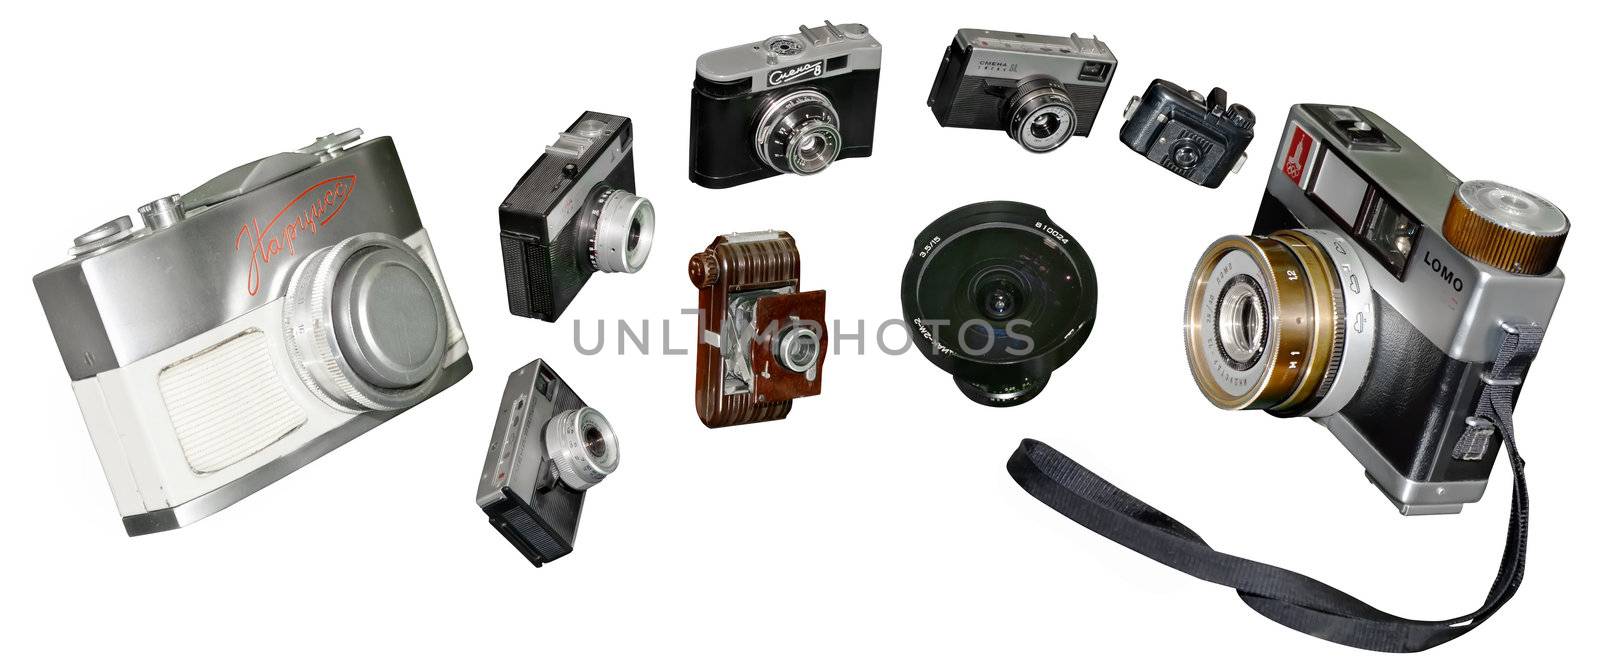 a number of retro photocameras